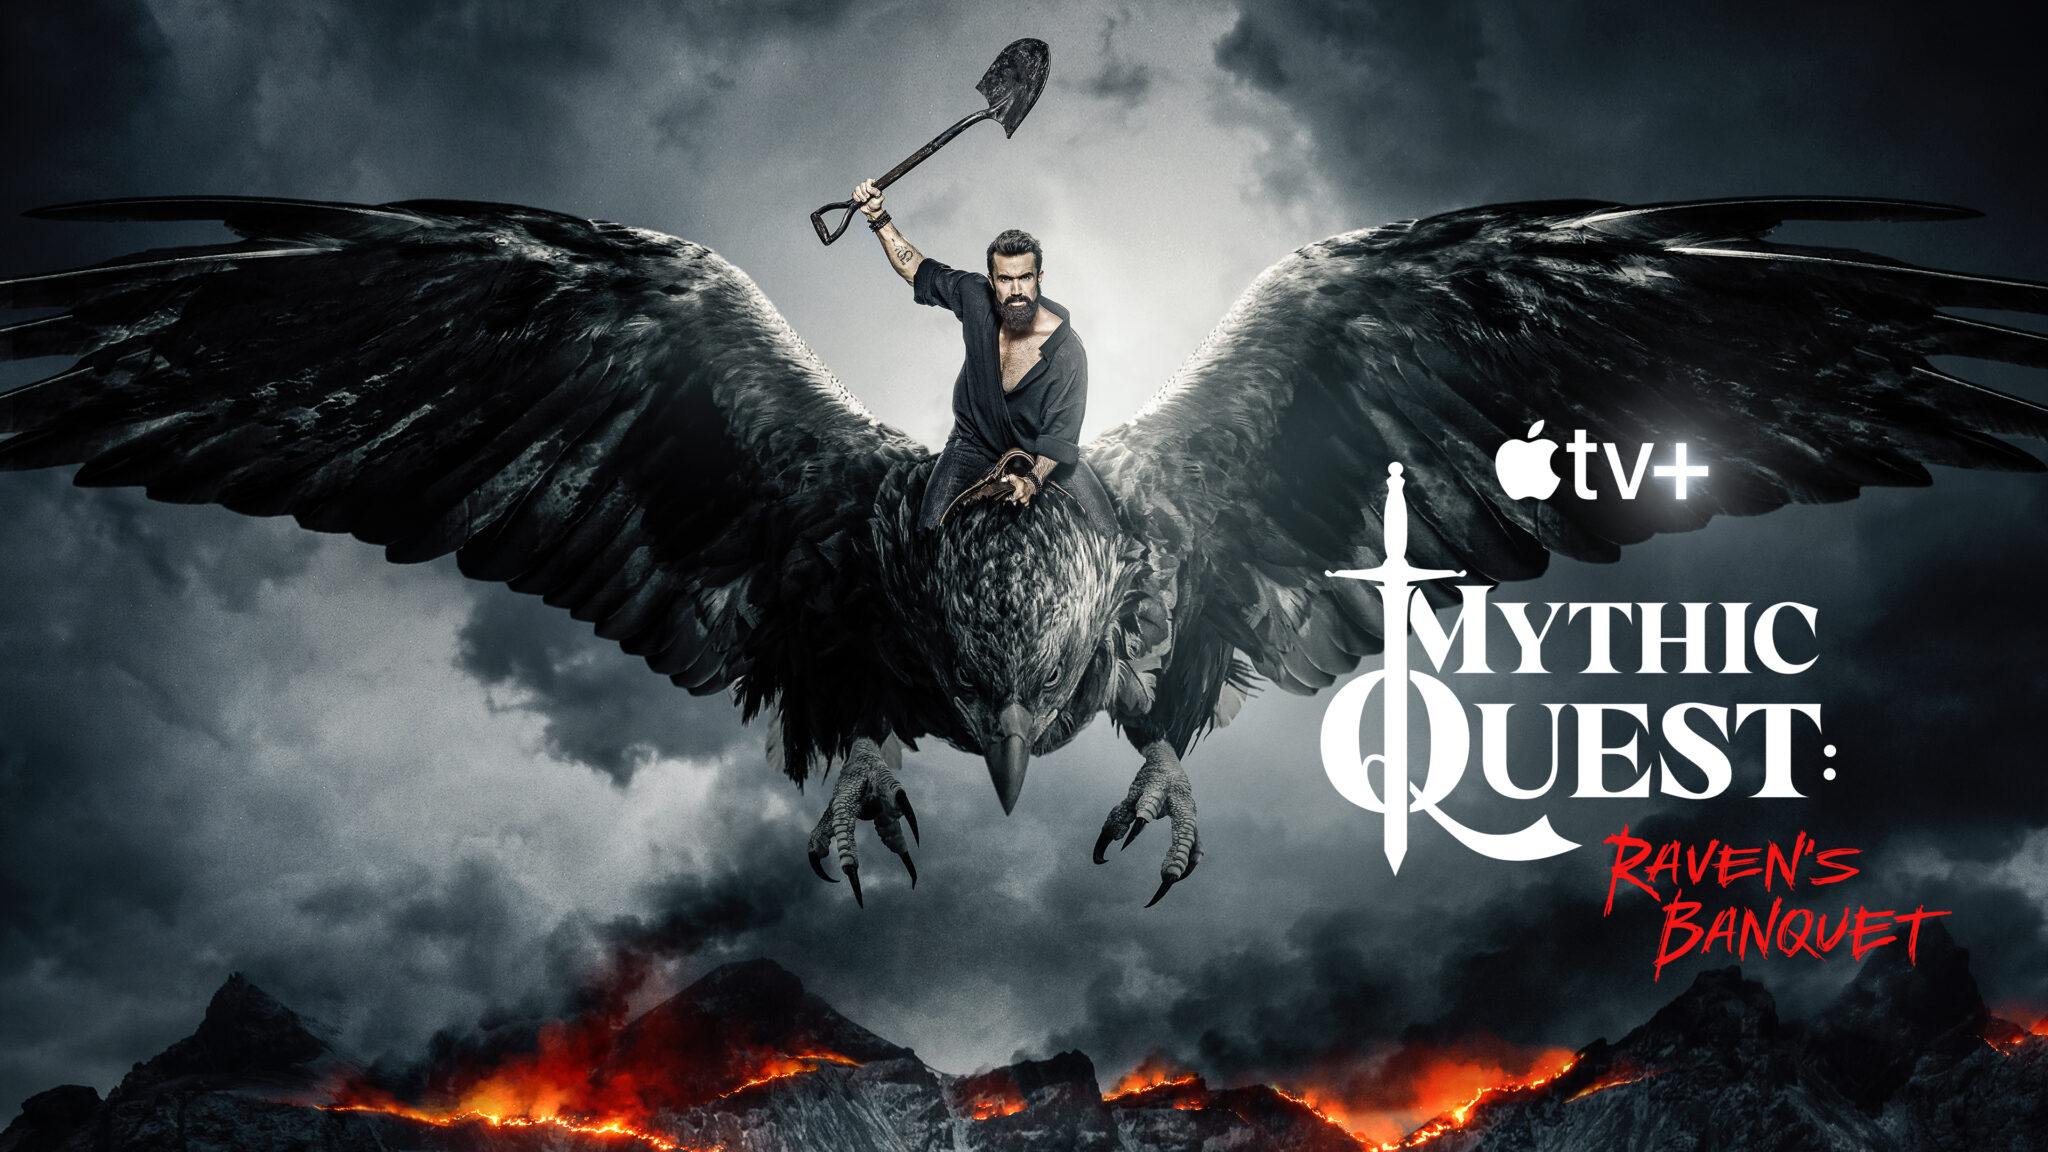 Das Banner zu Mythic Quest zeigt einen Mann auf einem riesigen Raben fliegend